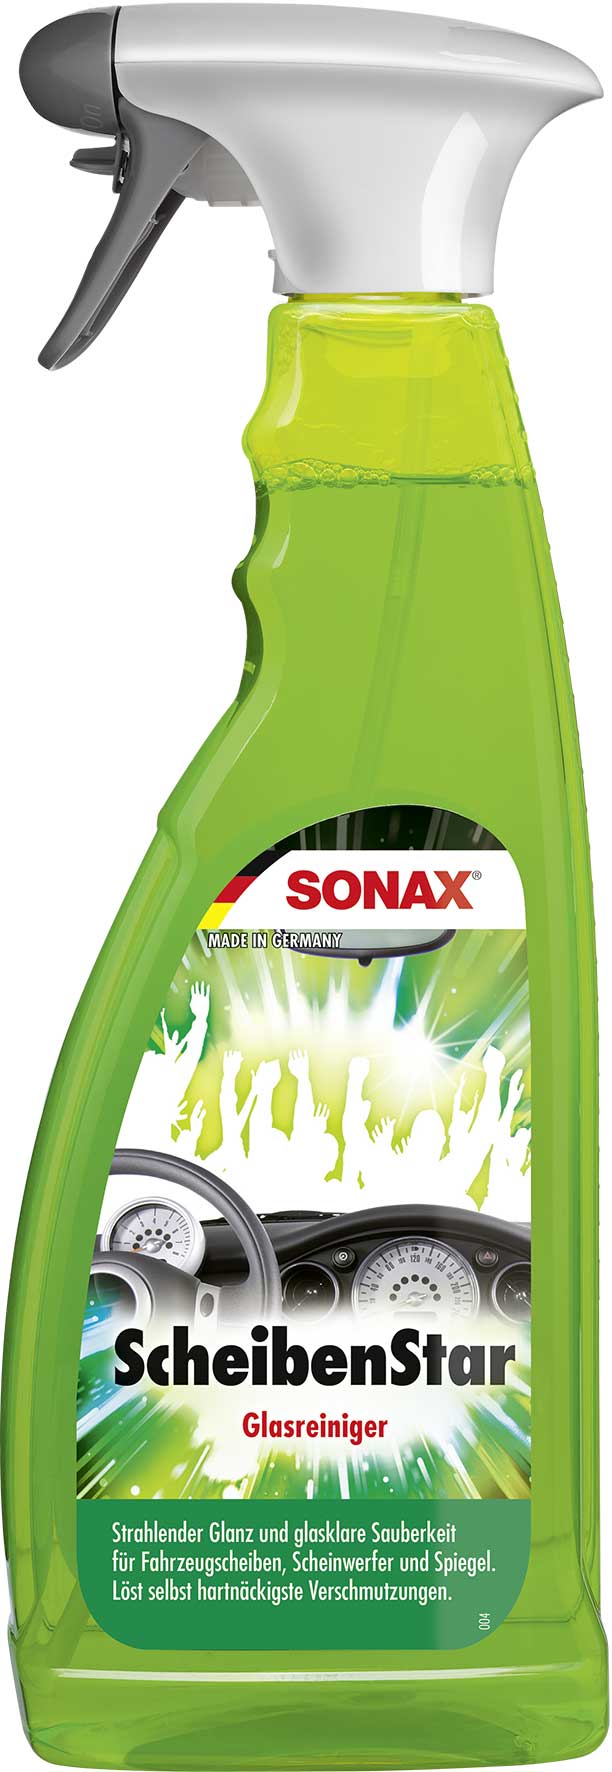 SONAX ScheibenStar 750ml